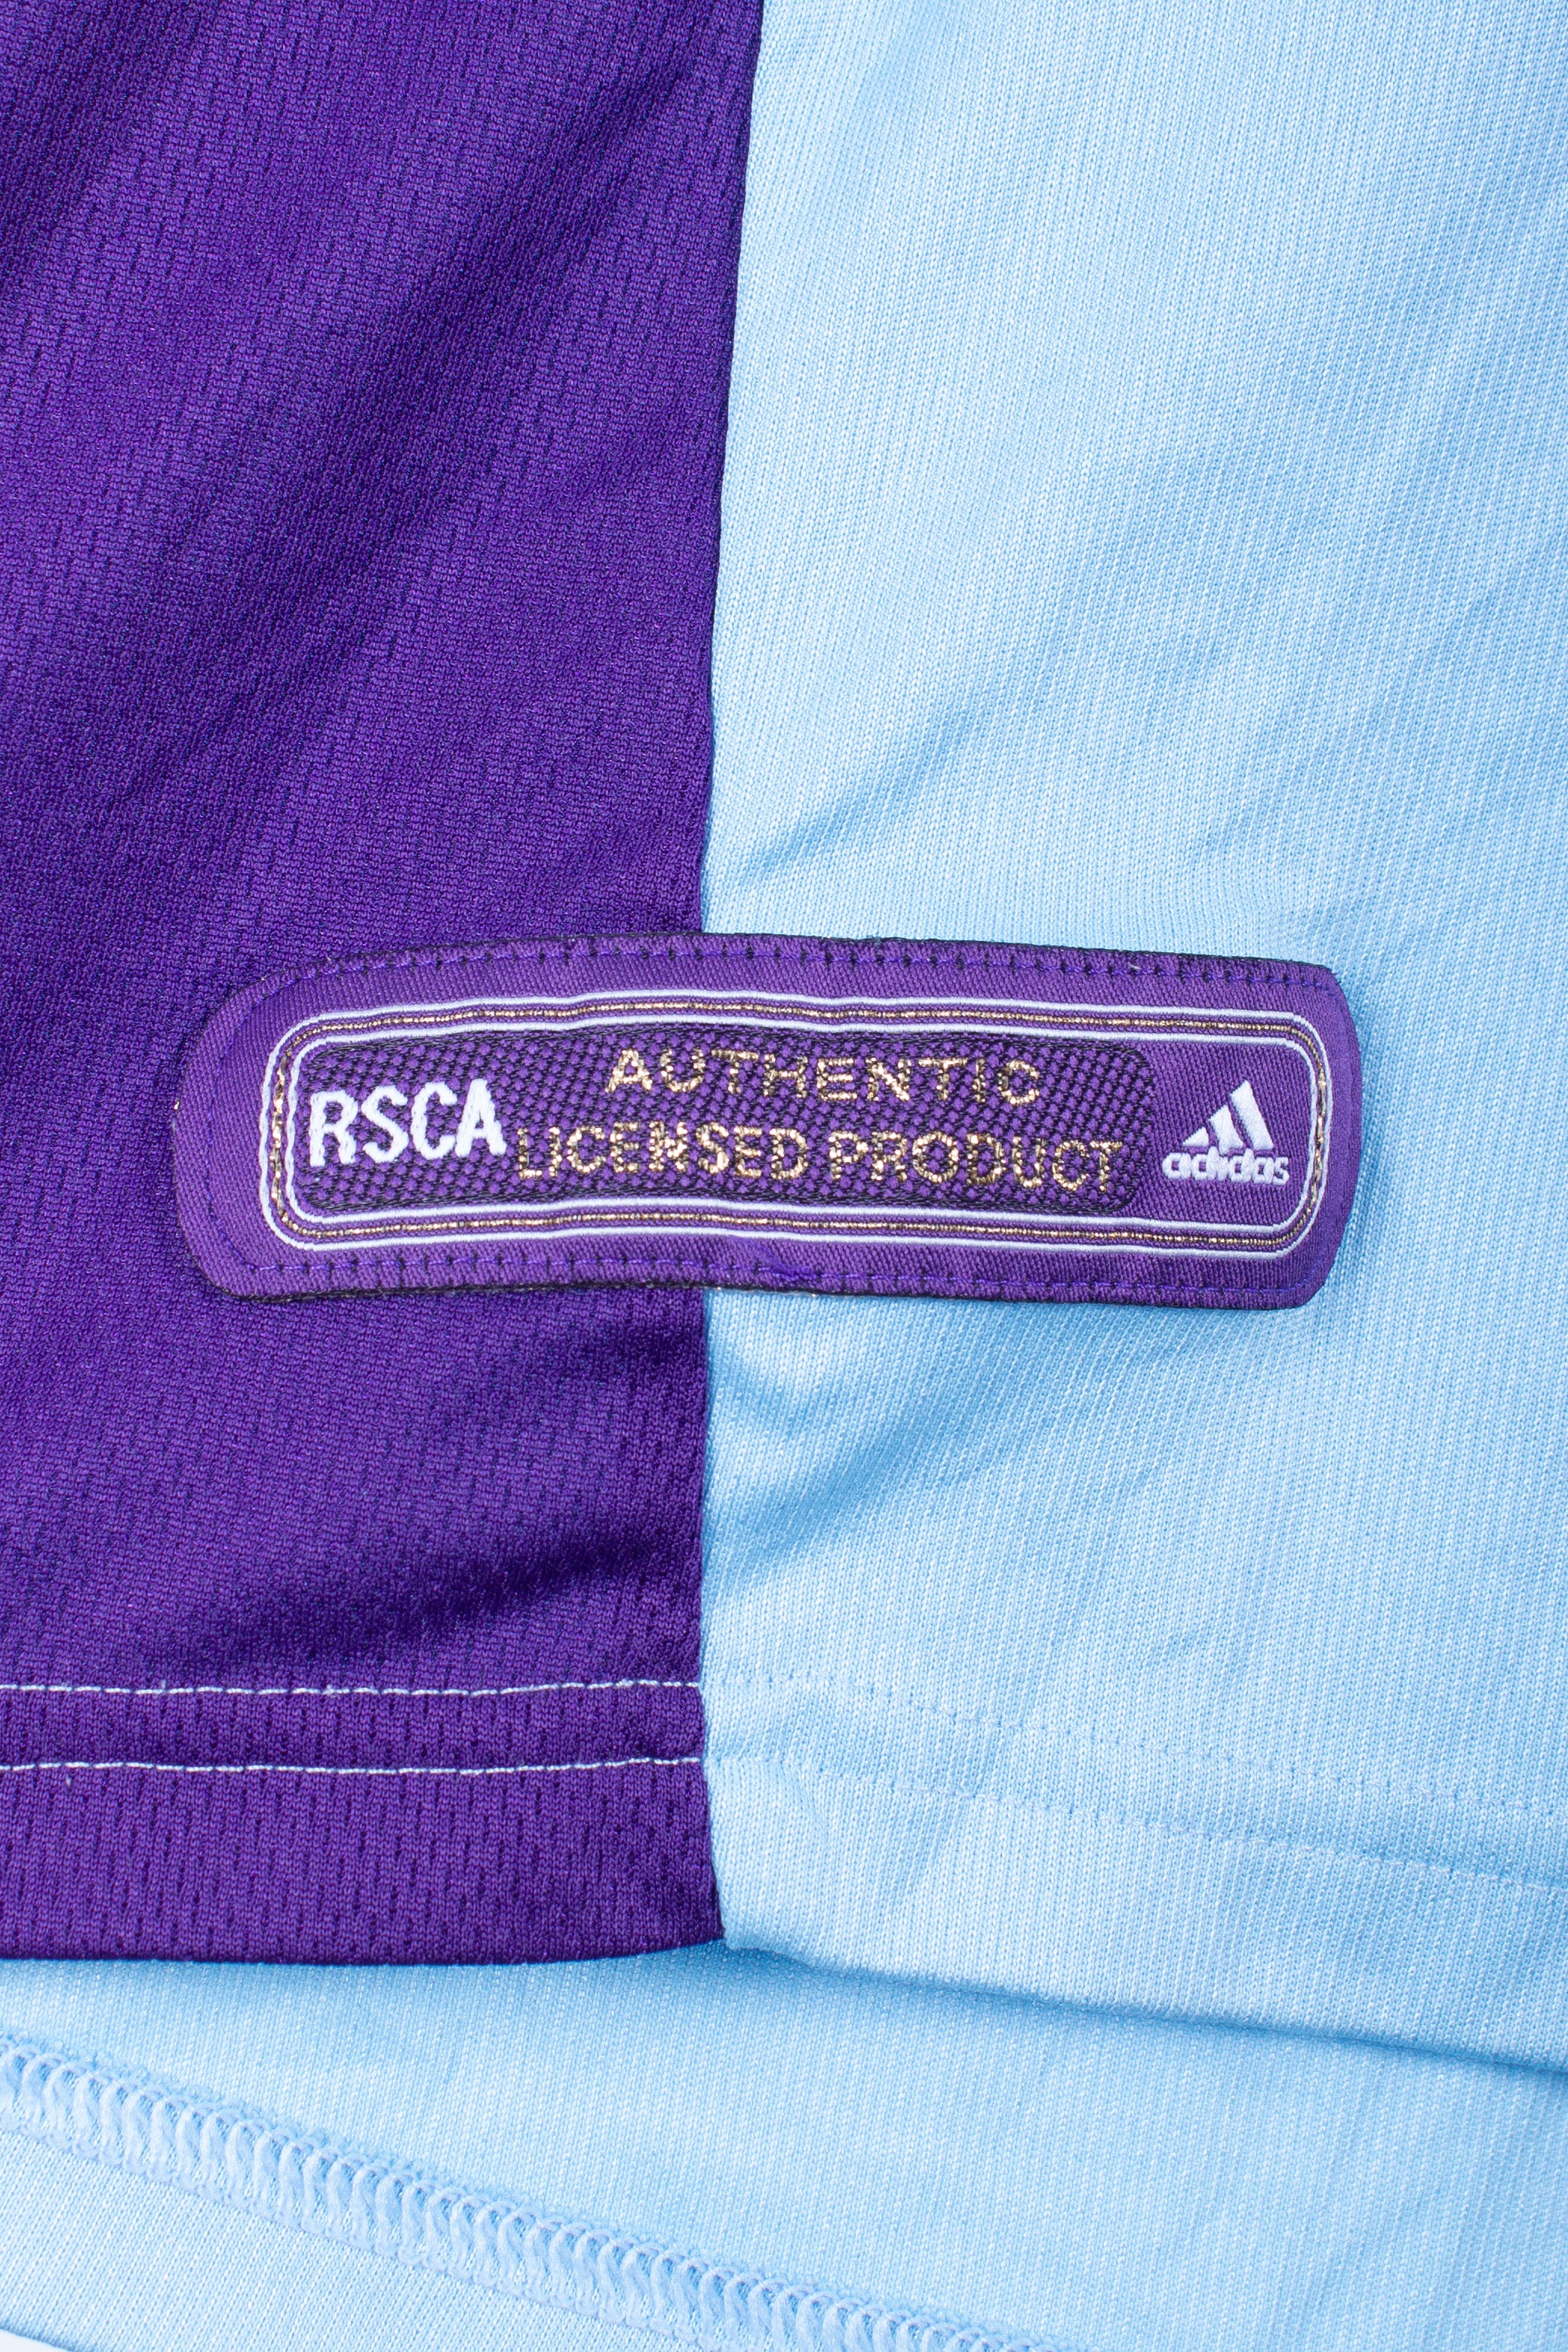 RSC Anderlecht 2000/02 Away Shirt